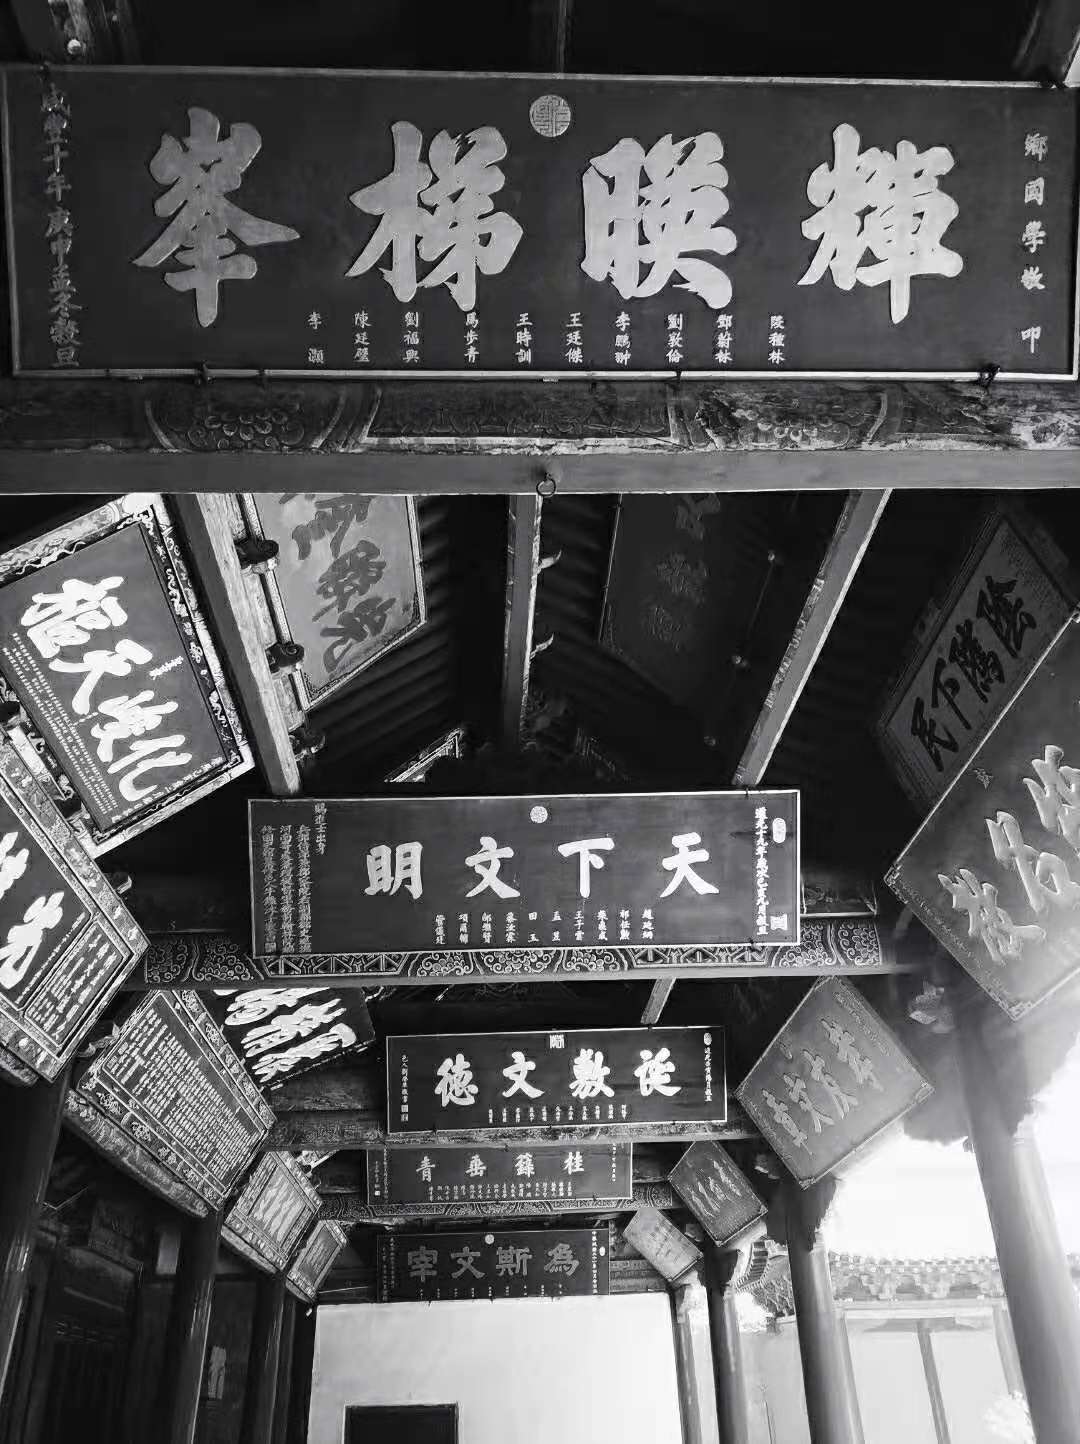 武威文庙中的众多匾额记录了这座城市曾经兴盛繁荣的文化教育。本文图片均由作者拍摄